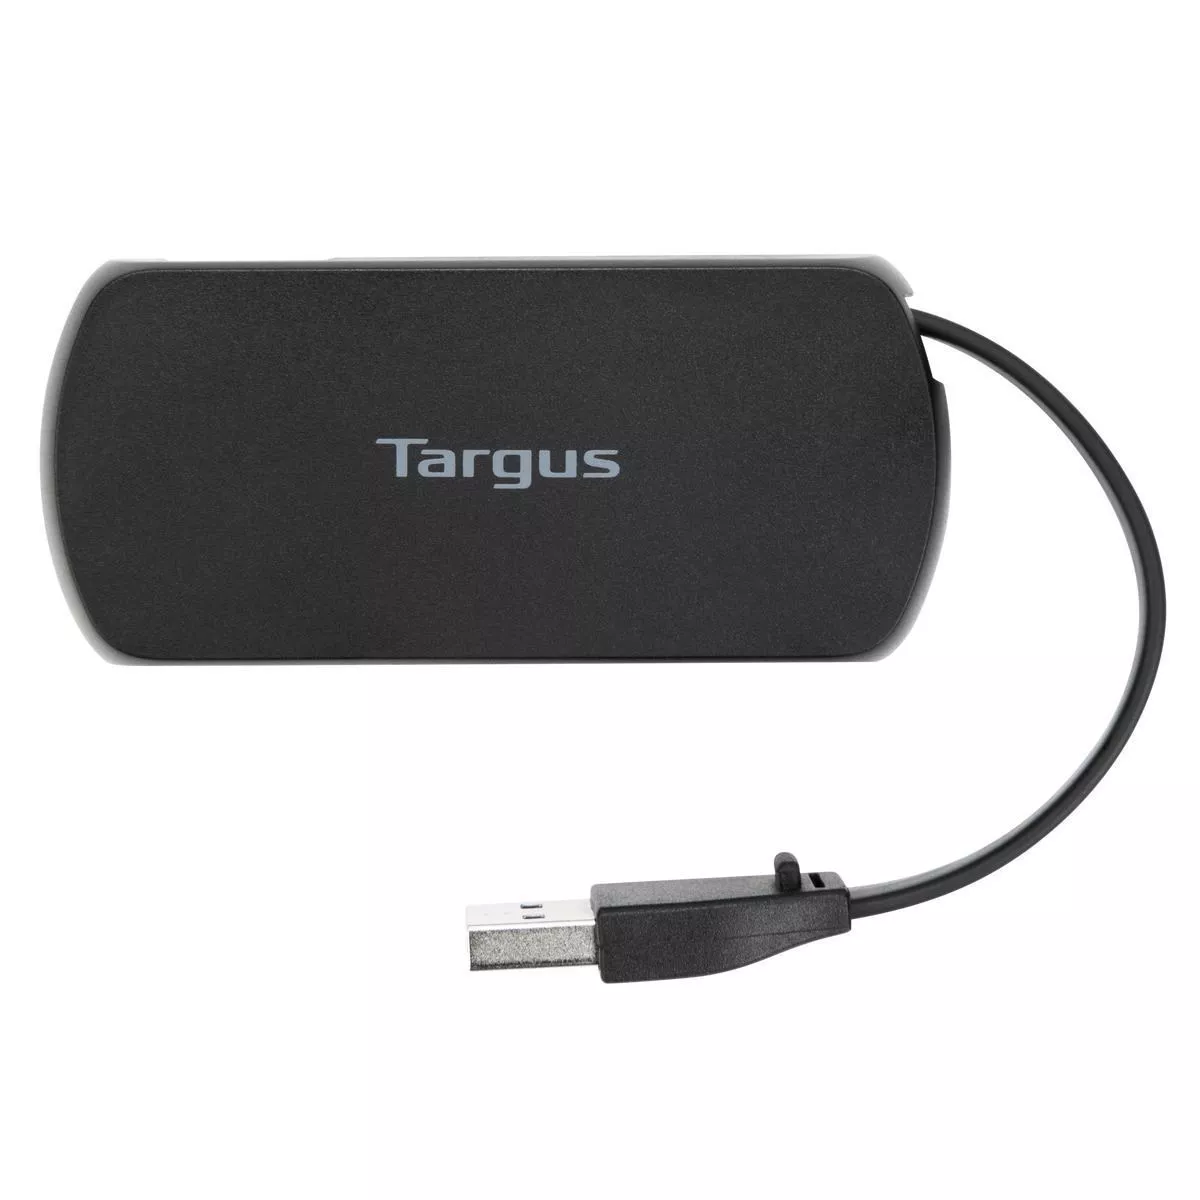 Vente TARGUS Concentrateur 4 ports USB Targus au meilleur prix - visuel 4